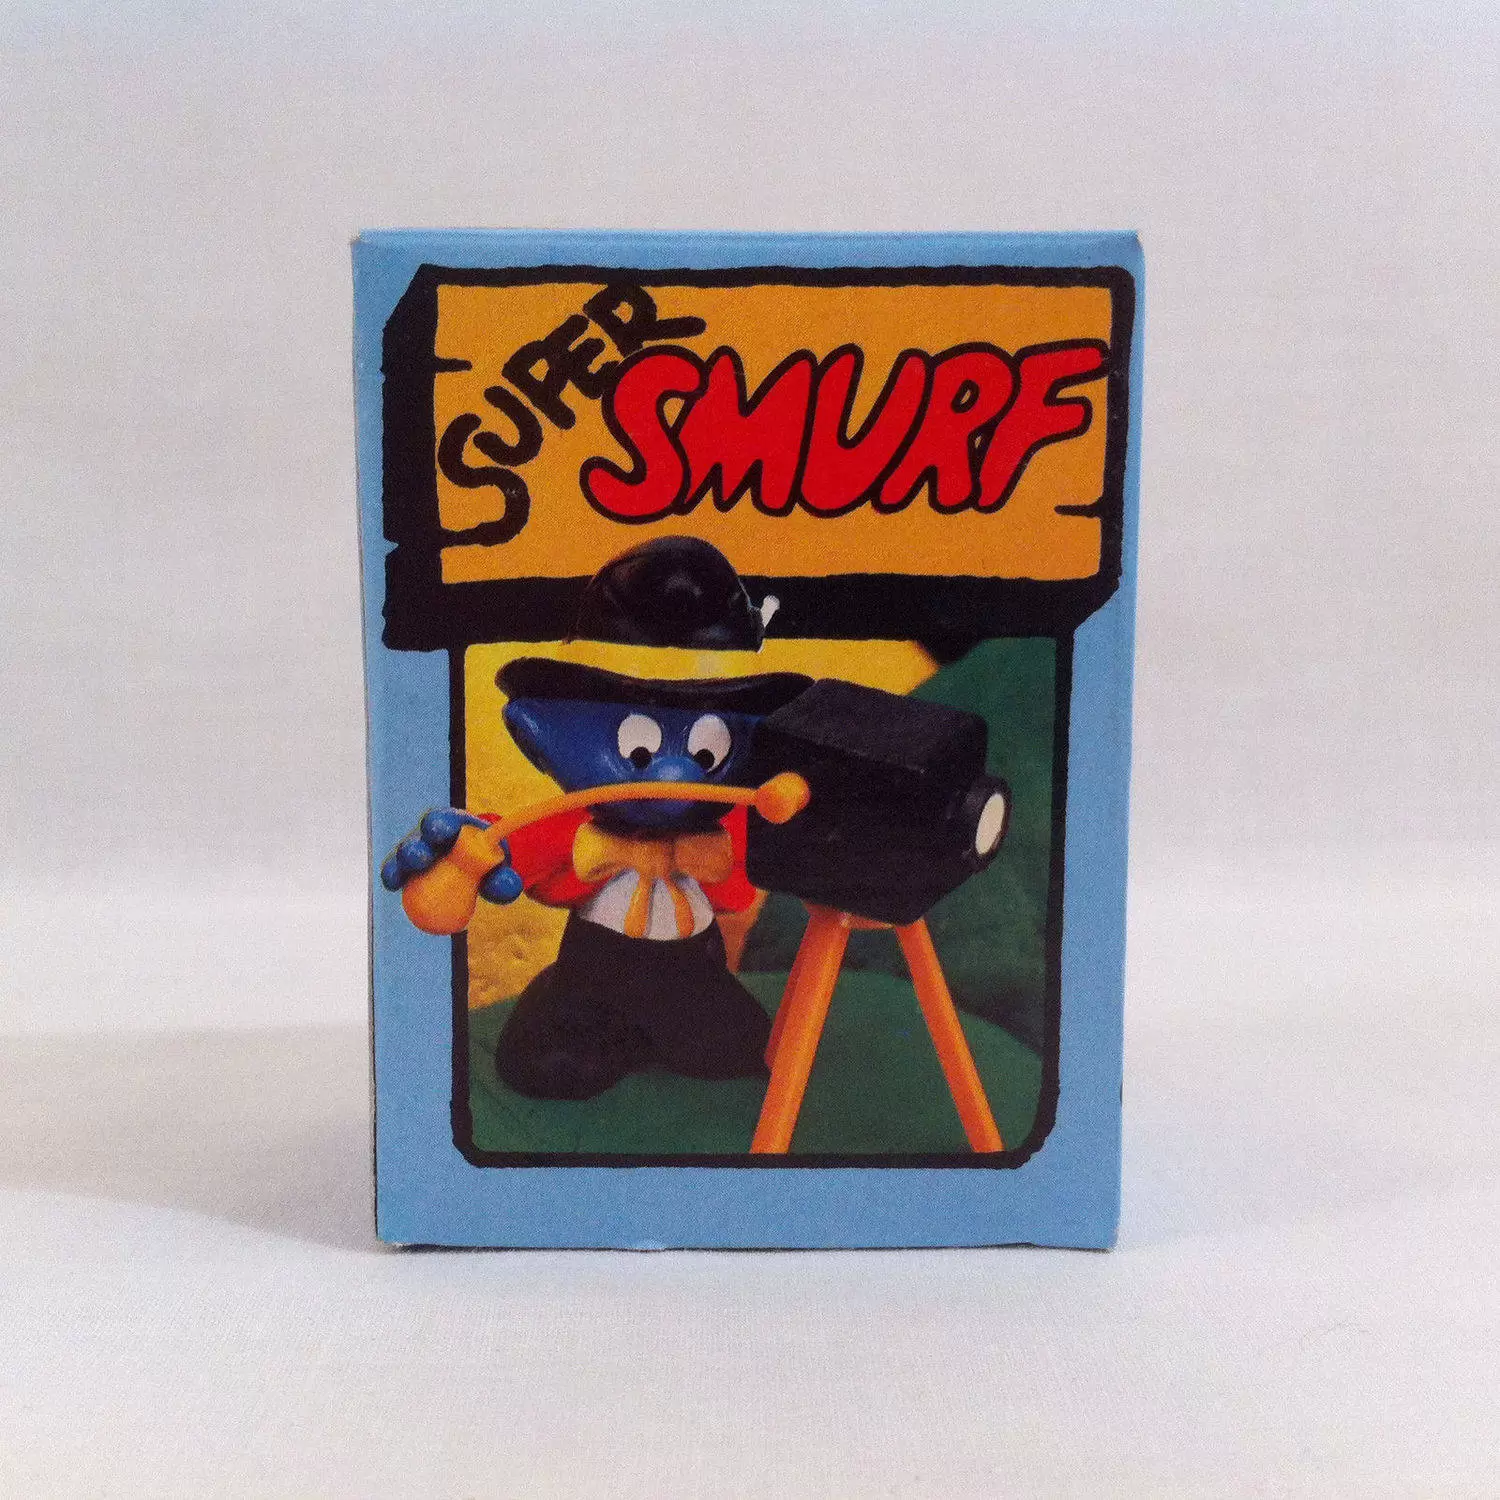 Super Smurfs - Photographer